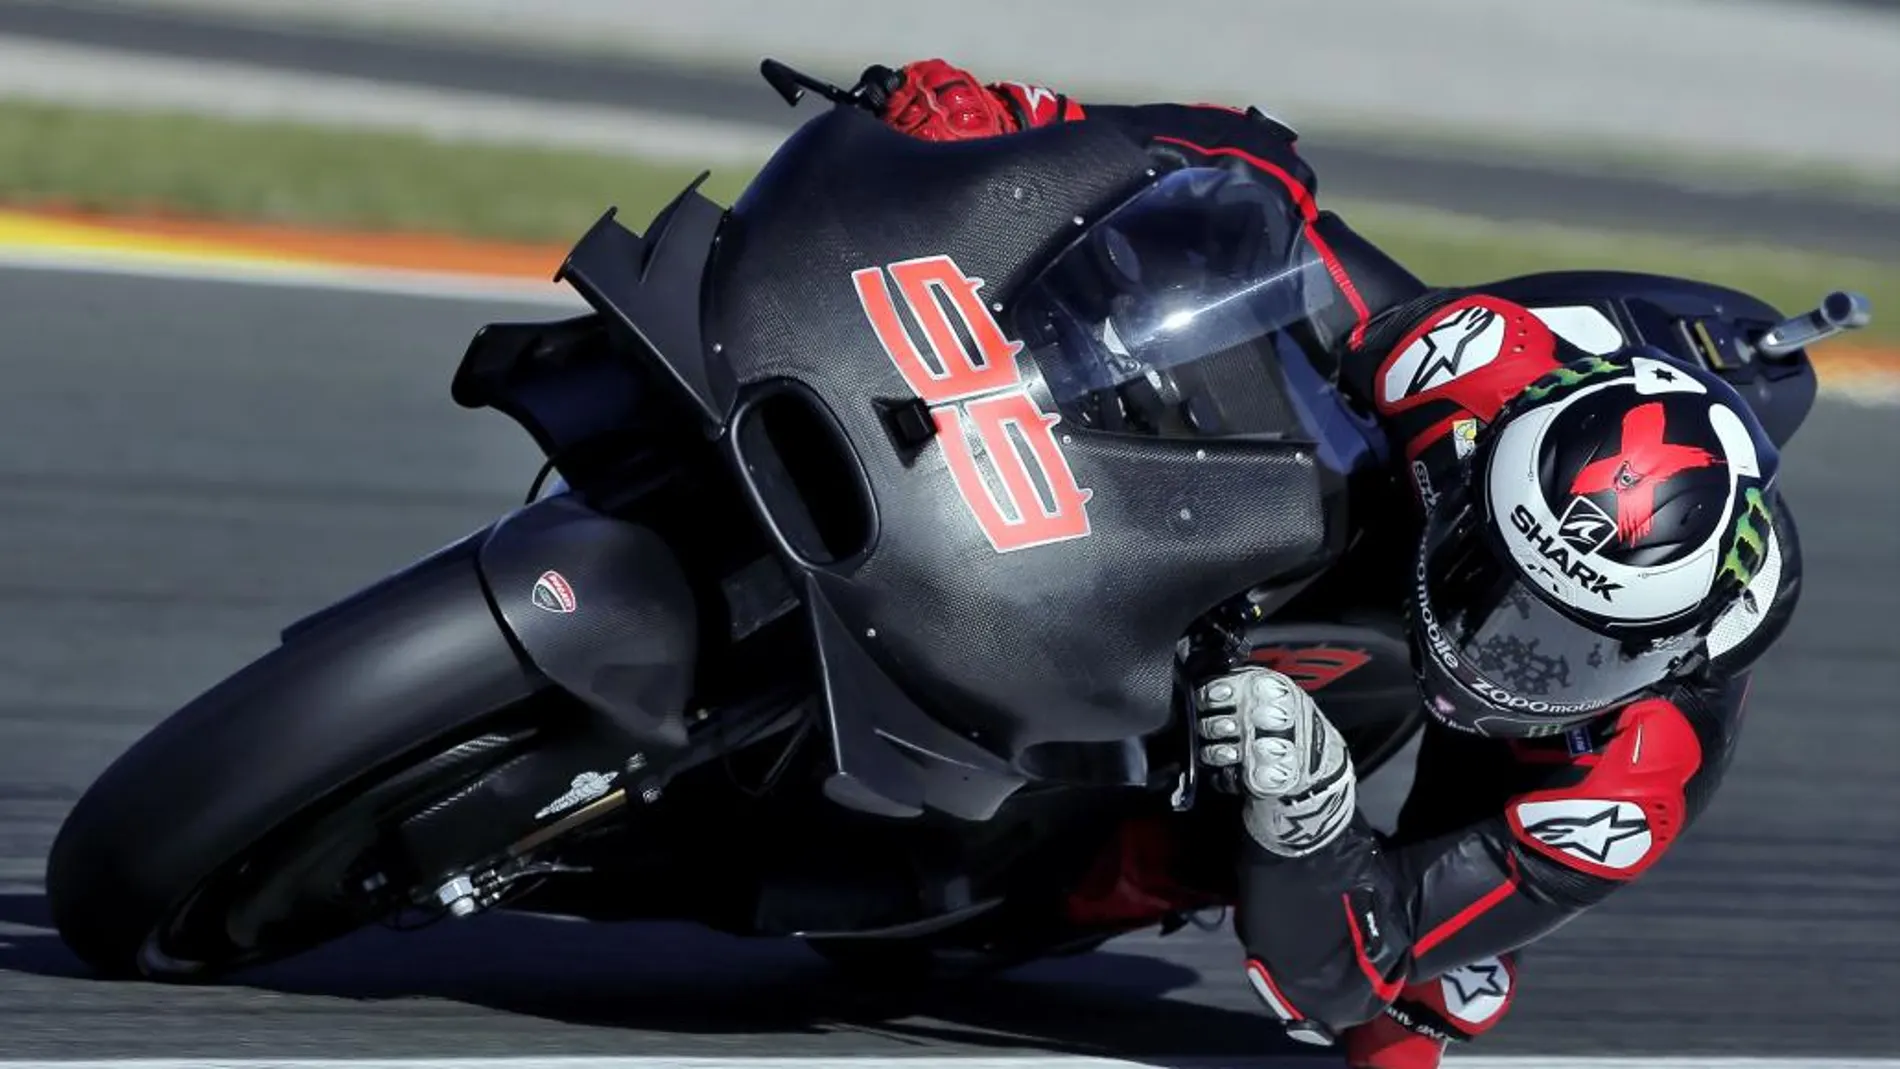 El piloto español de Moto GP, Jorge Lorenzo, rueda esta mañana en el Circuito Ricardo Tormo de Cheste (Valencia), donde se ha subido por primera vez a la Ducati que pilotará la próxima temporada.